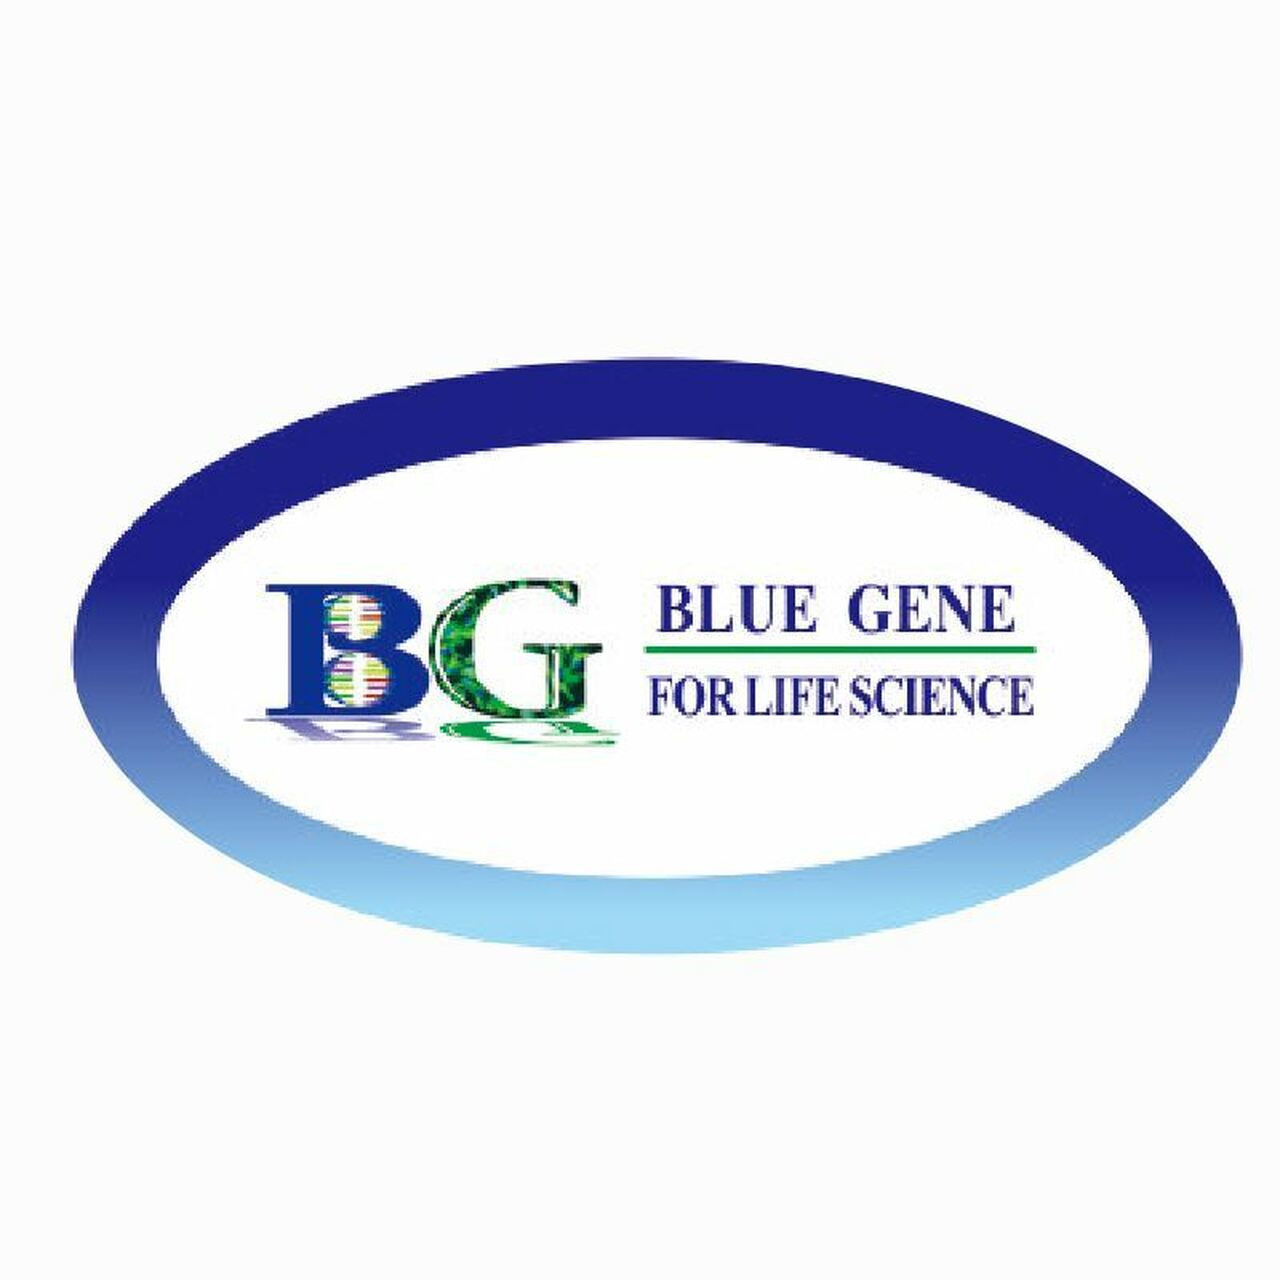 bluegene-kynurenic acid-elisa kit